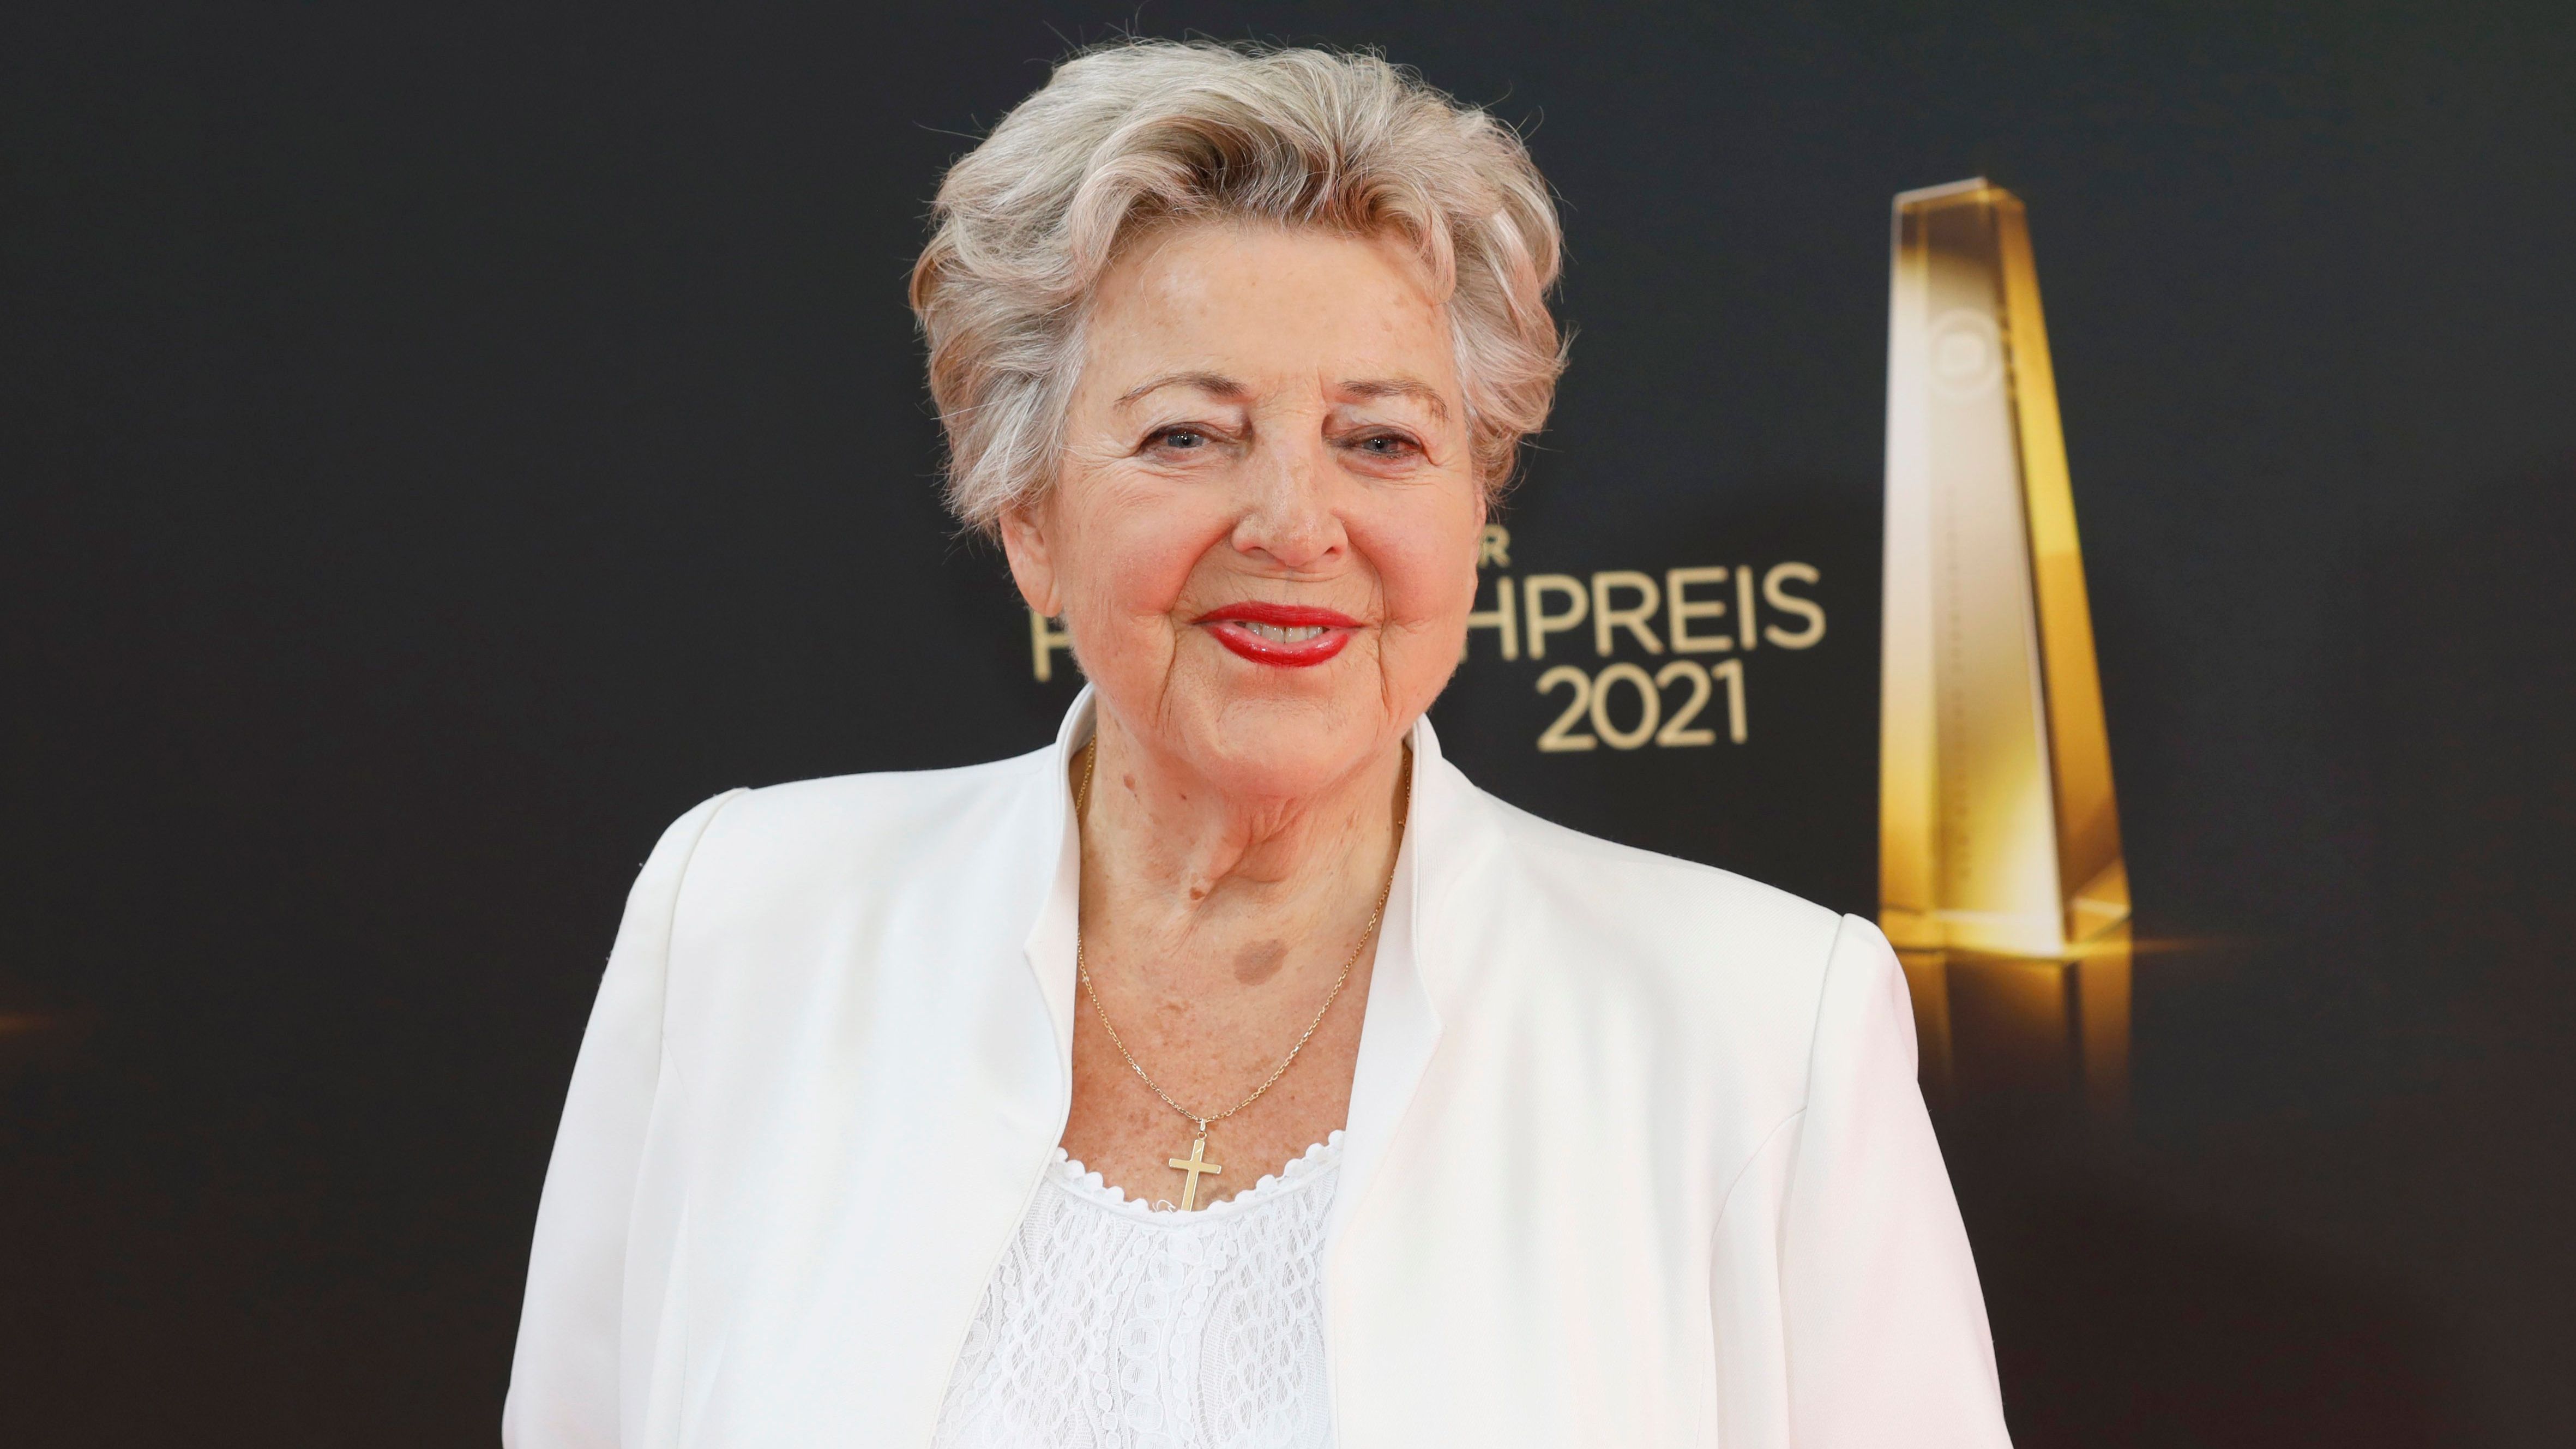 Marie-Luise Marjan bei der Verleihung des Deutschen Fernsehpreises 2021 im Porträt.